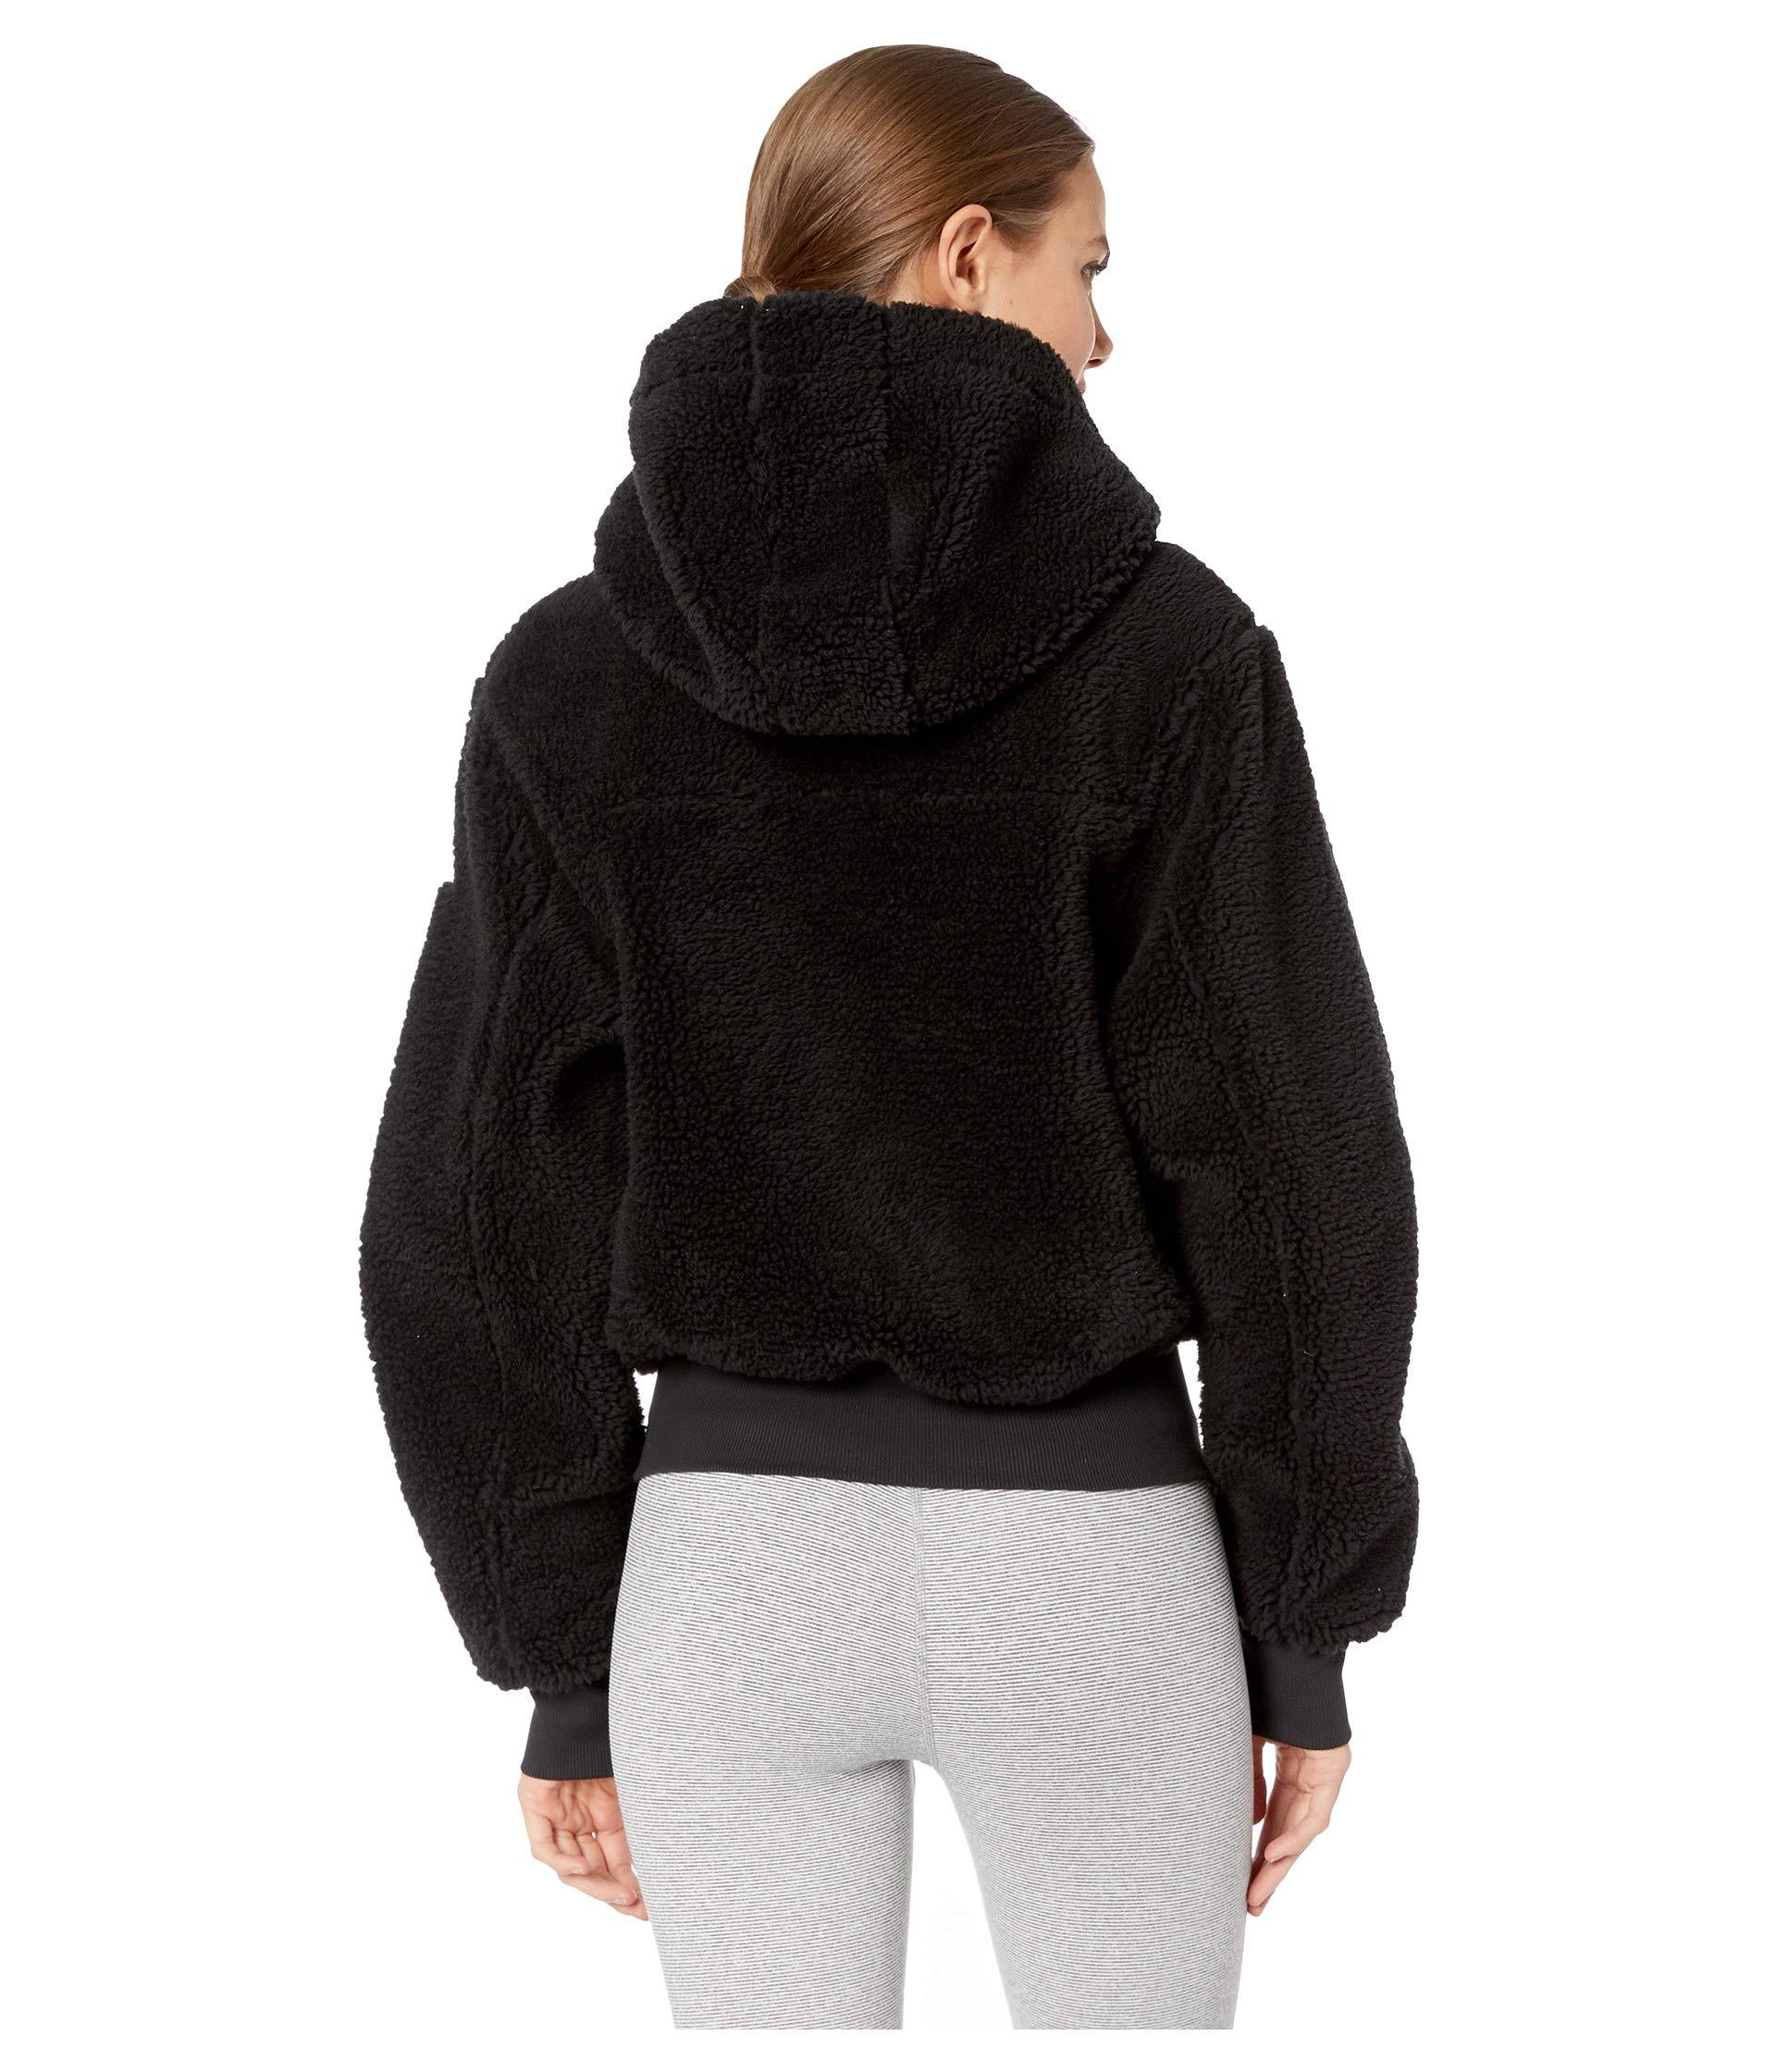 Alo Yoga Synthetic Foxy Sherpa Jacket in Black - Lyst